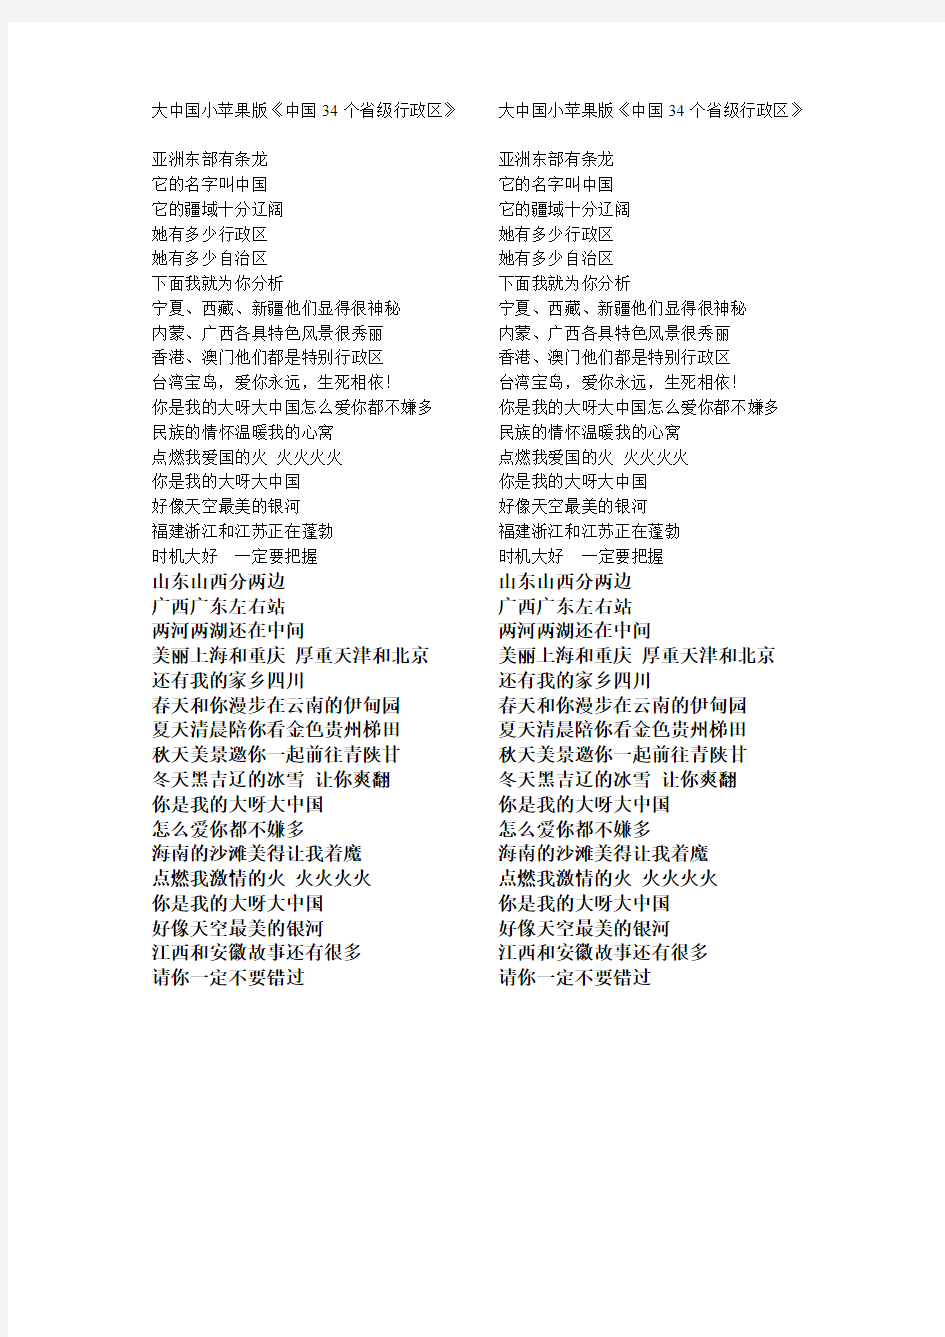 大中国小苹果版《中国34个省级行政区》歌词